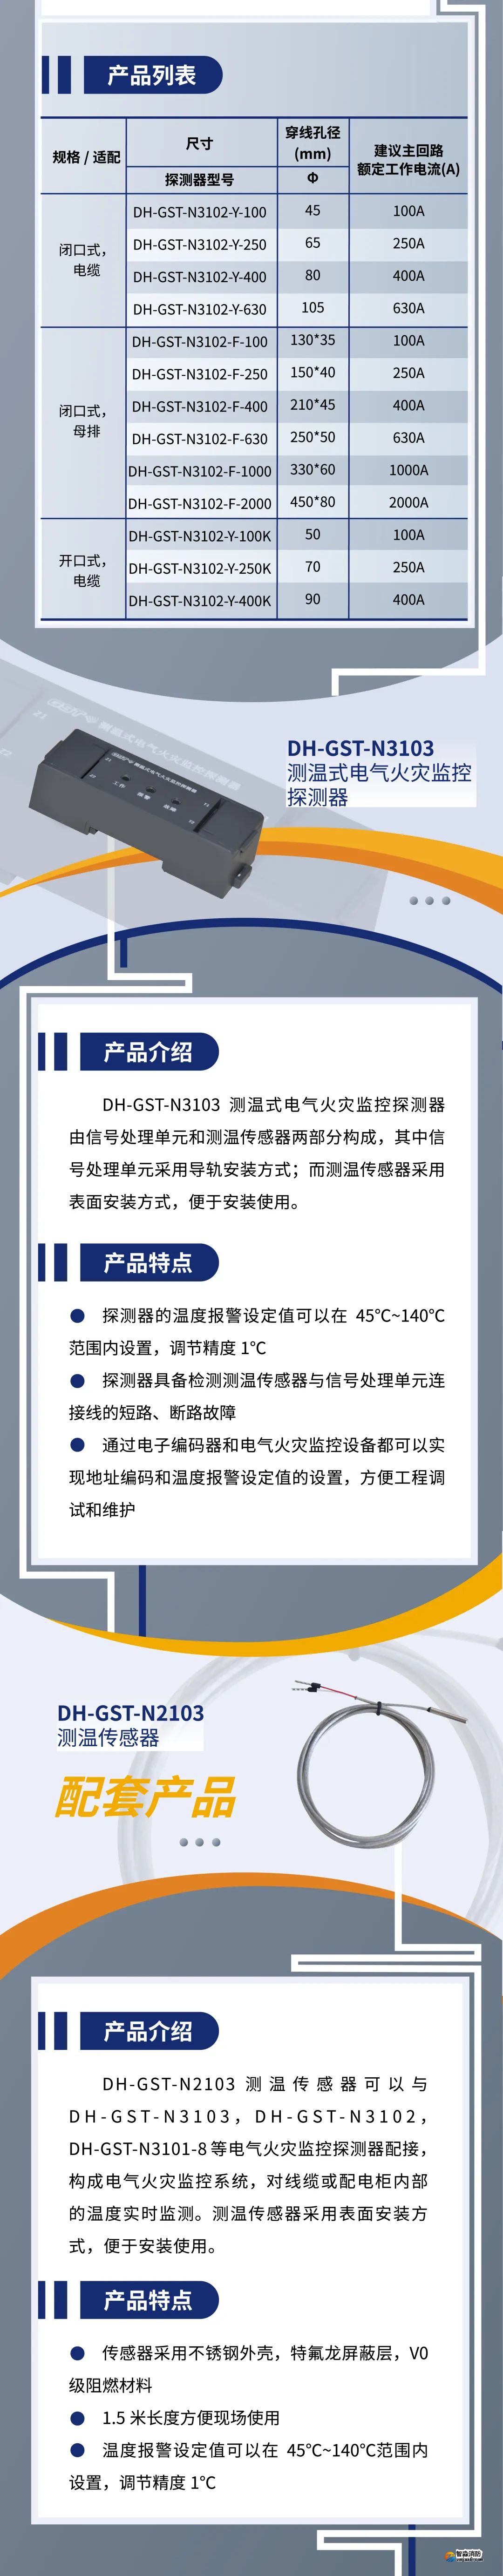 江南登录网址
新一代组合式电气火灾监控探测器产品上市